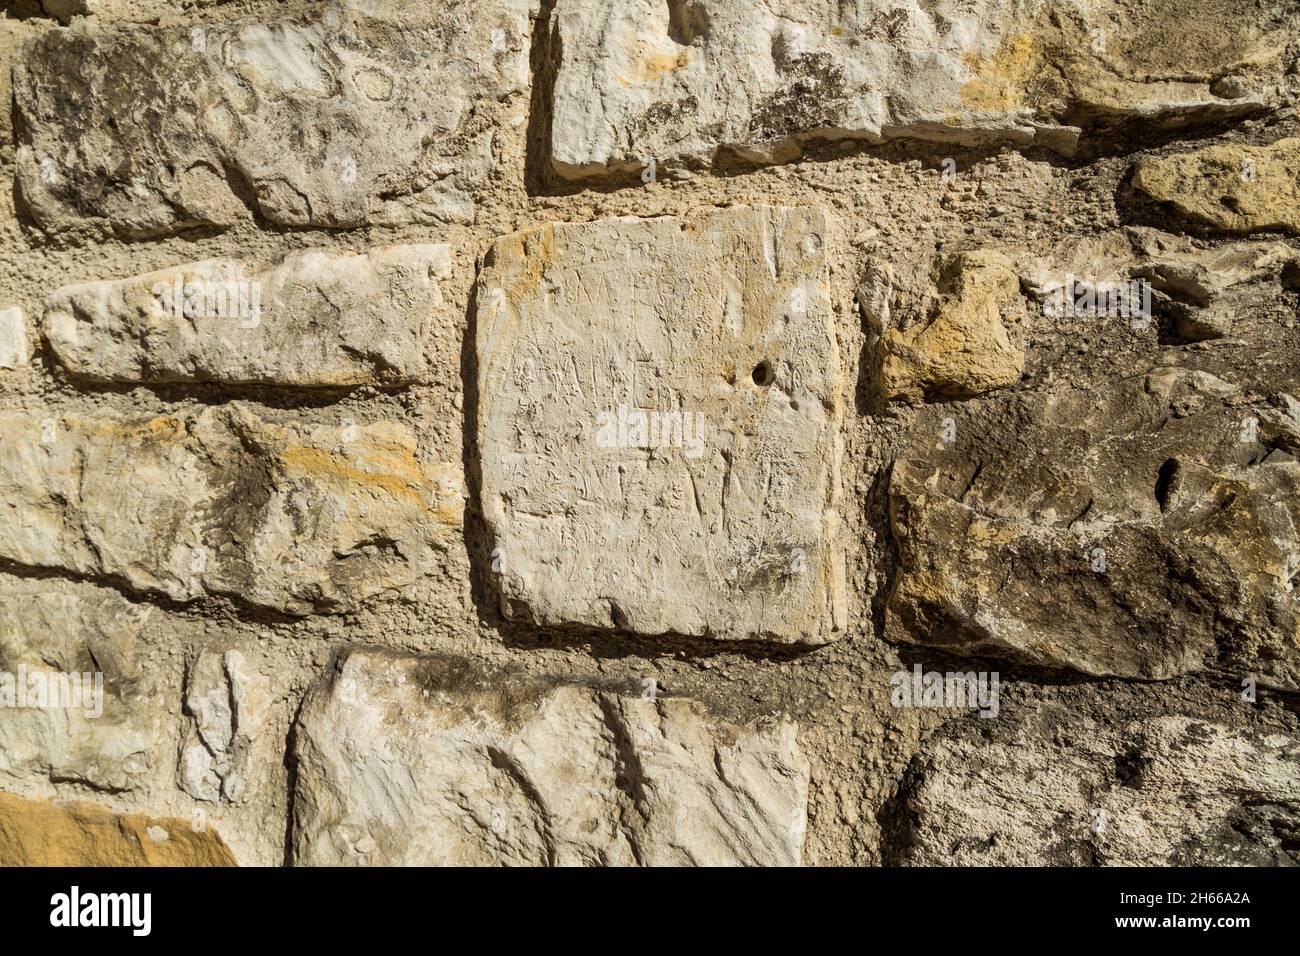 Stone wall at the Alamo, San Antonio Texas Stock Photo